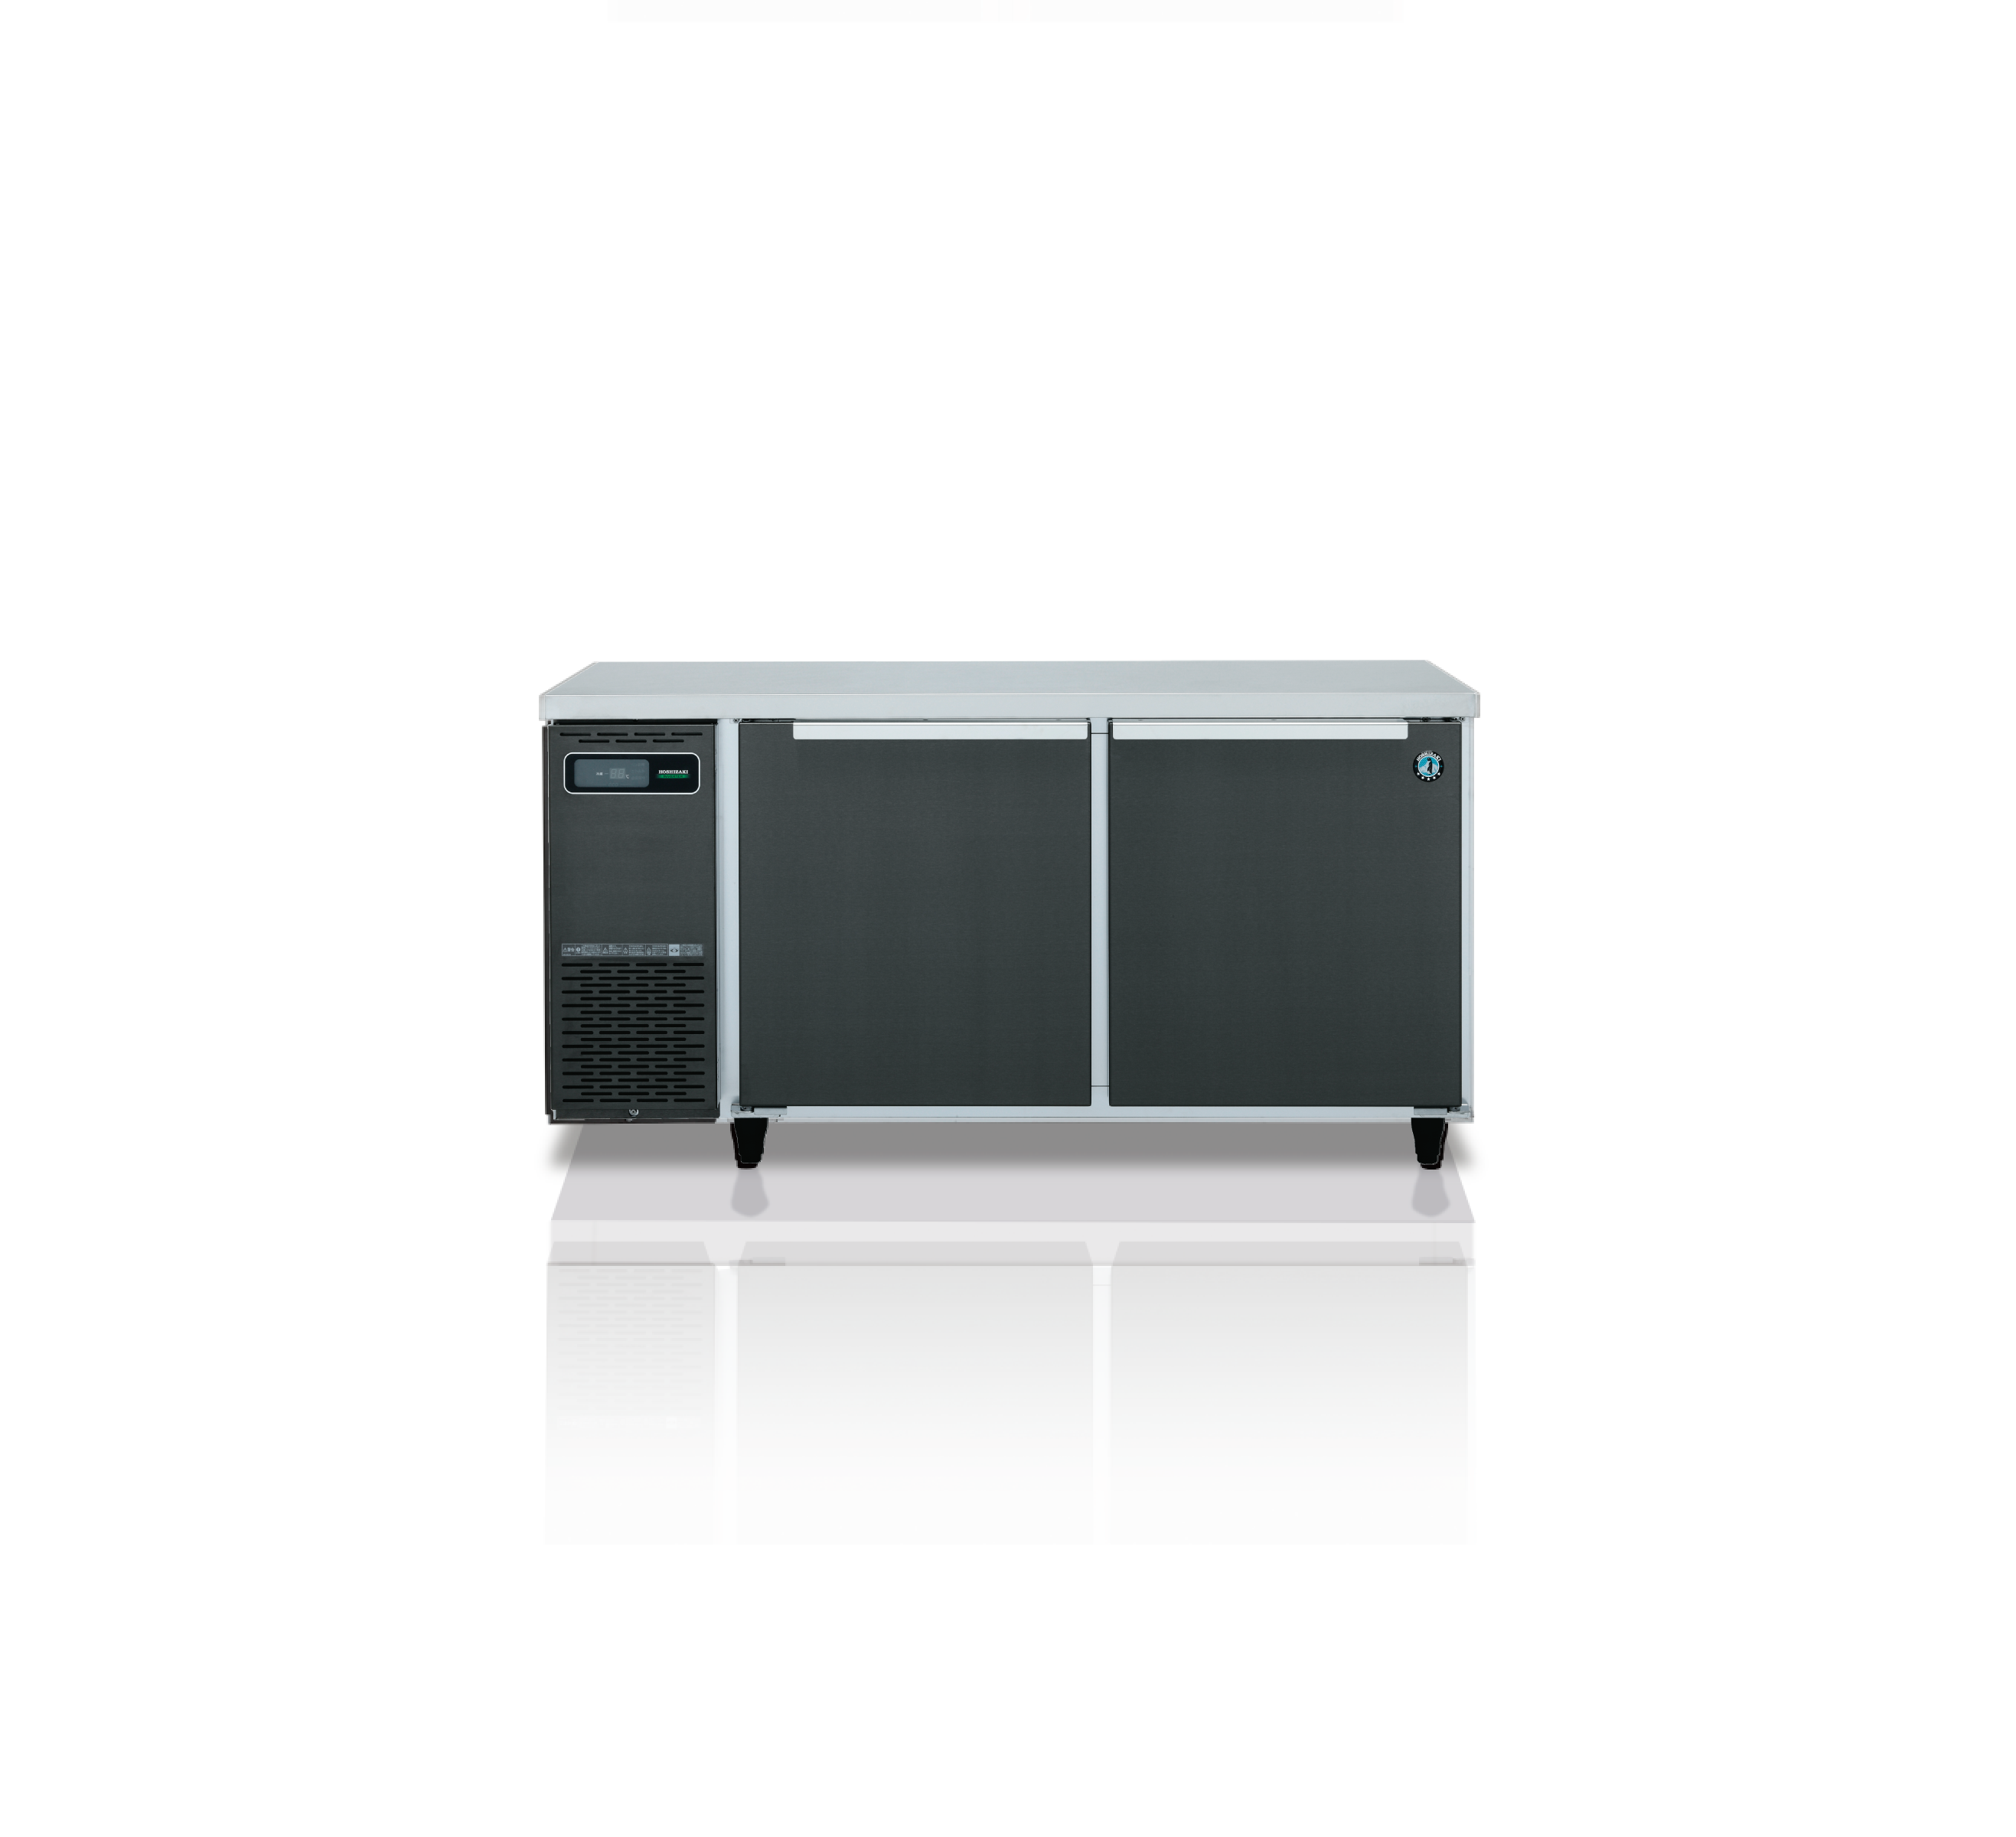 ホシザキデザイン冷凍冷蔵庫 | 業務用の厨房機器ならホシザキ株式会社